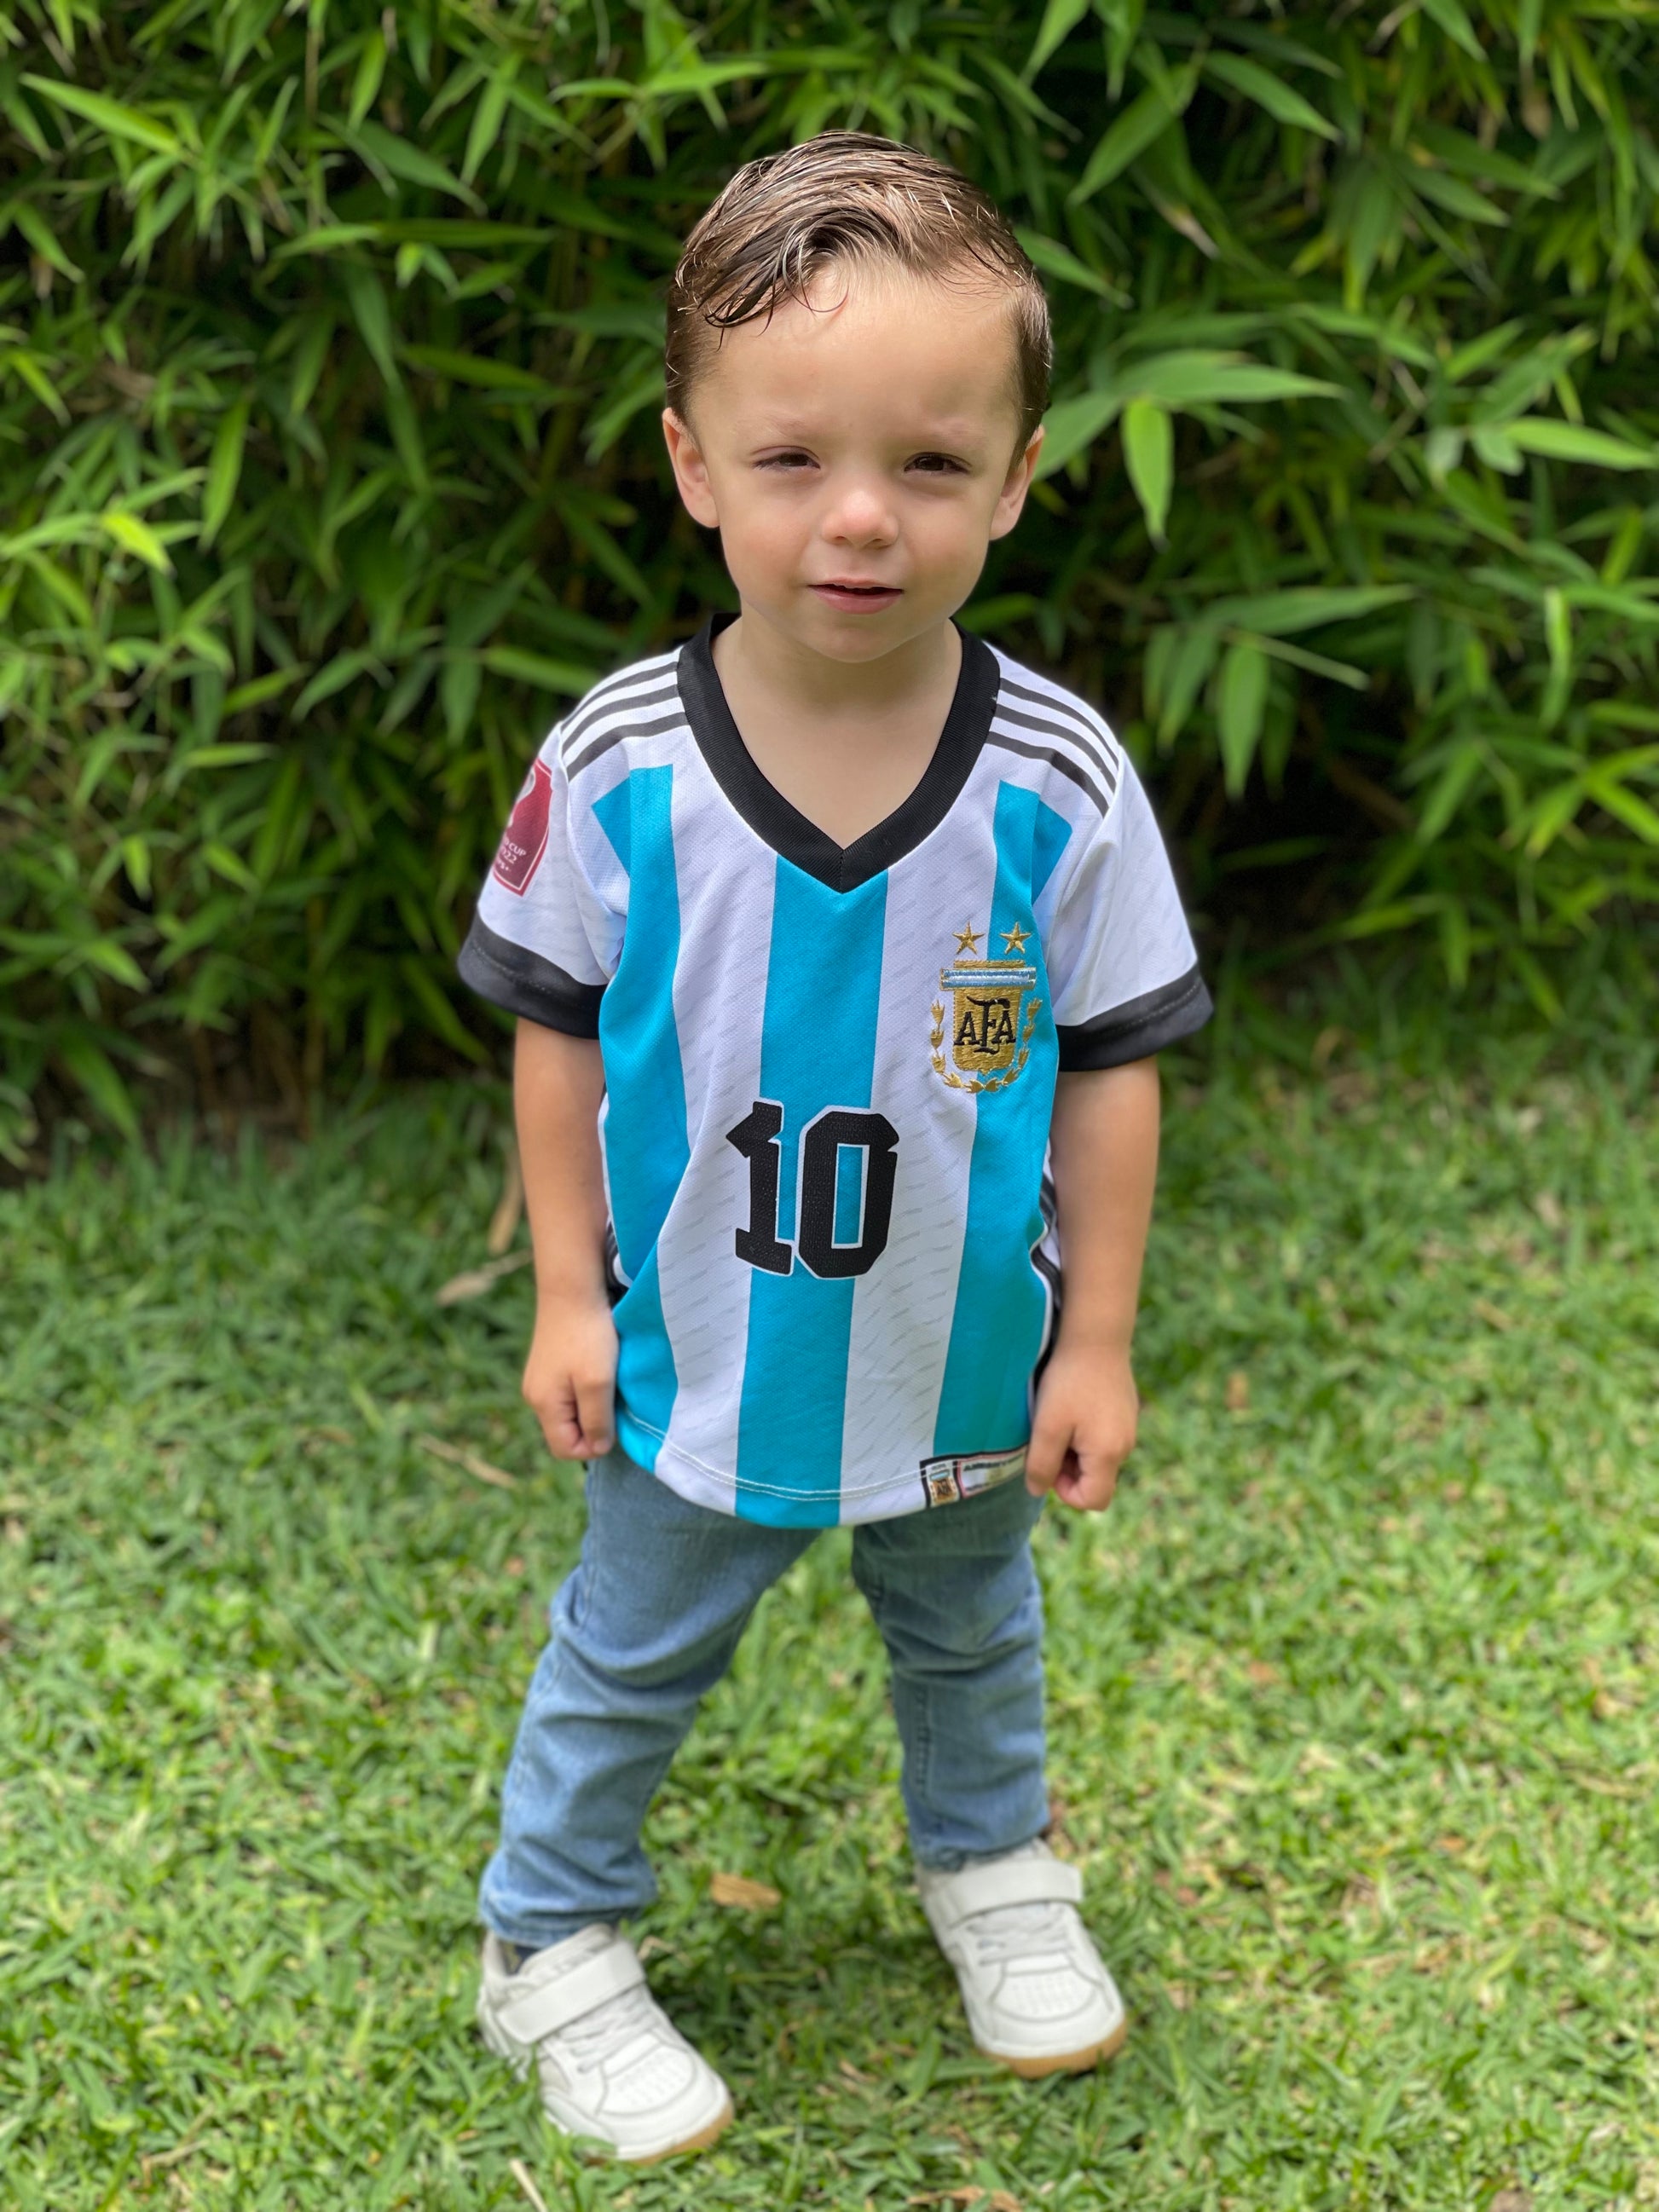 Camiseta Argentina Messi